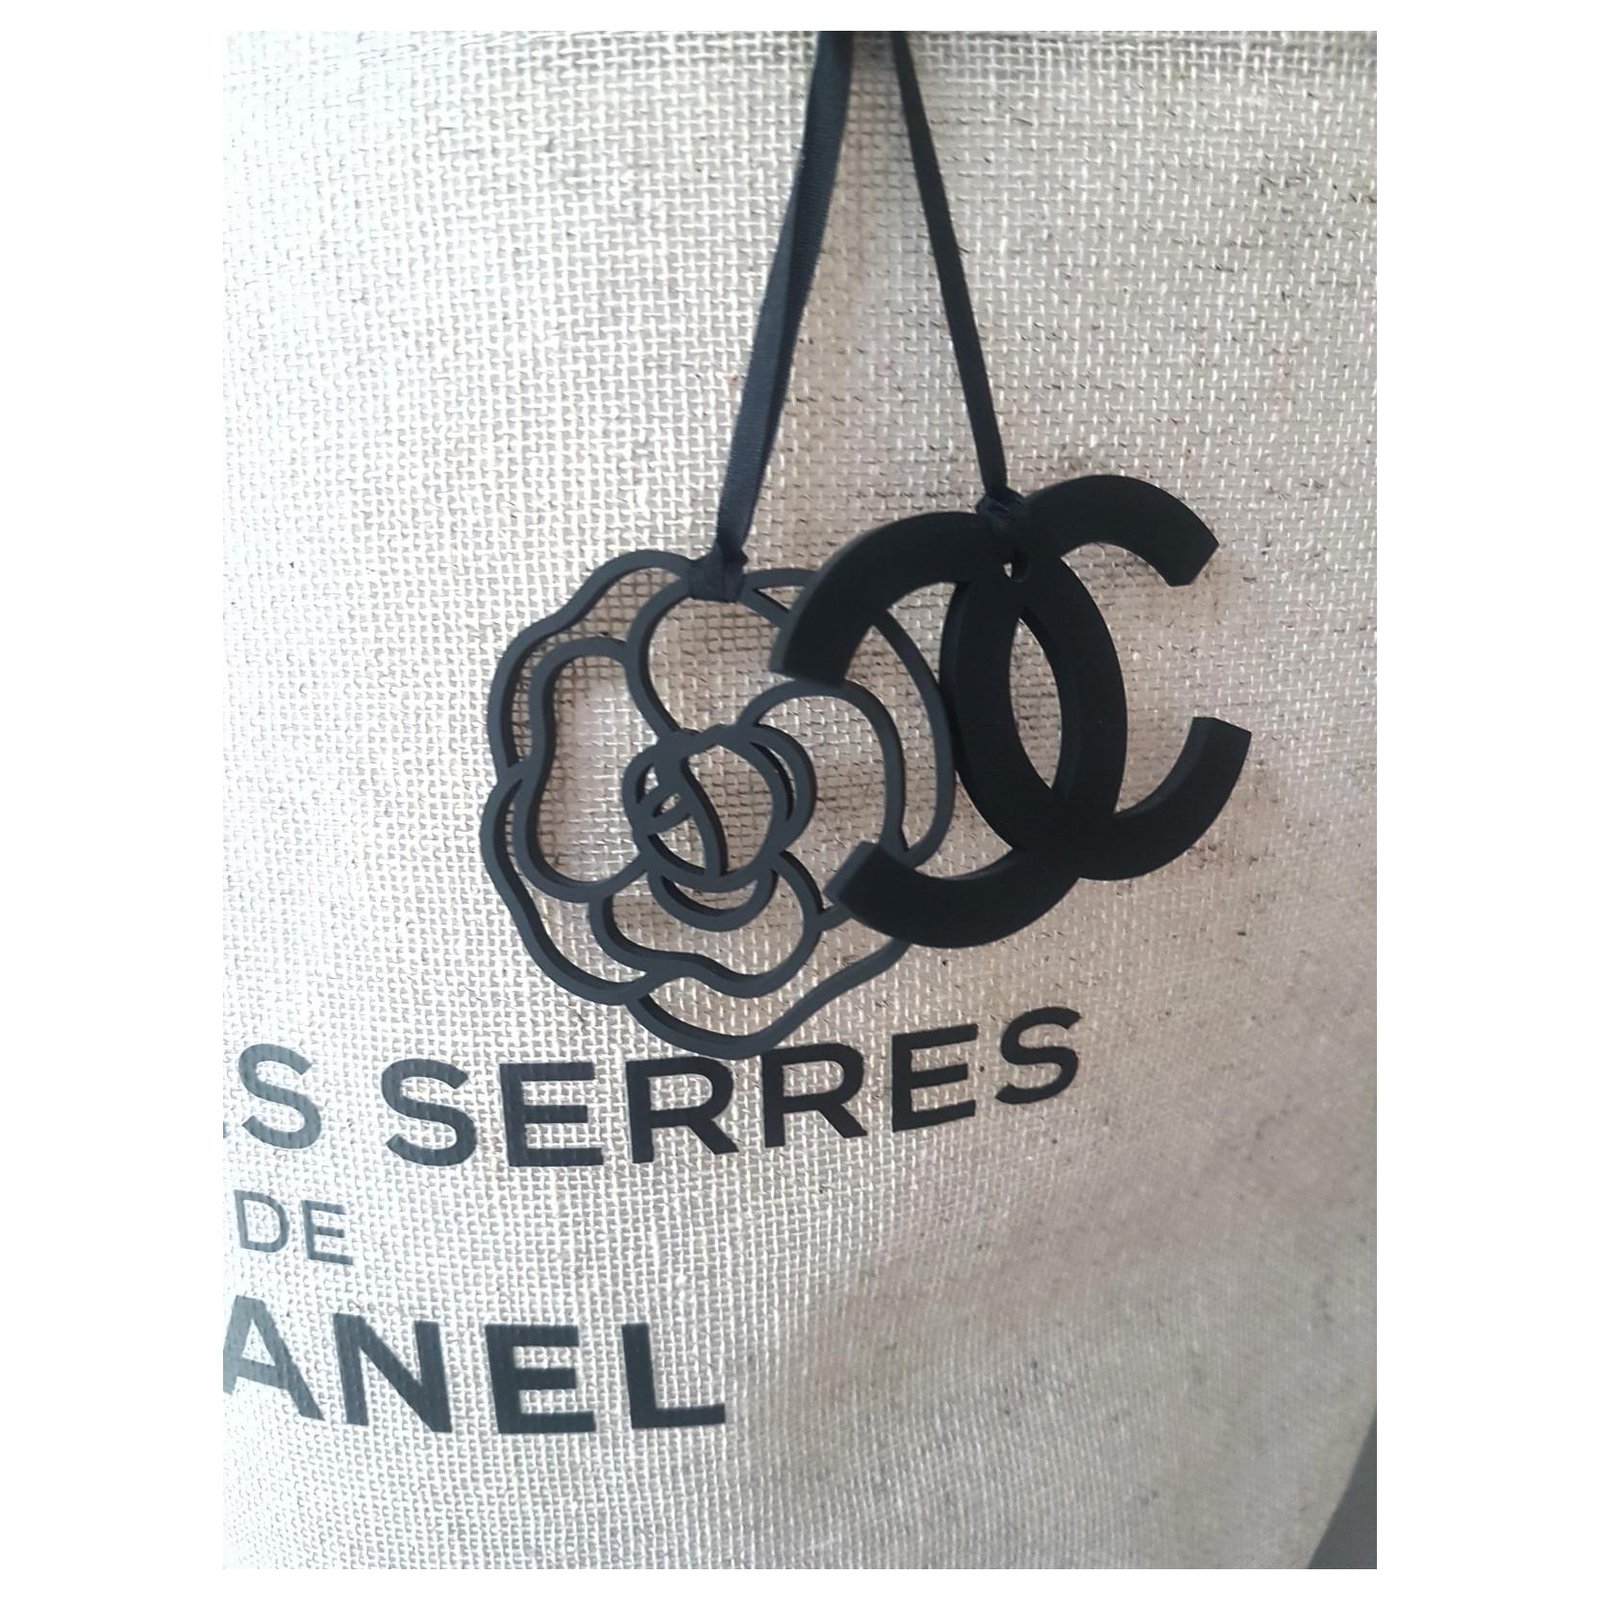 CHANEL Dans les serres de Chanel fashion show collector's bag. Beige  Cloth ref.296072